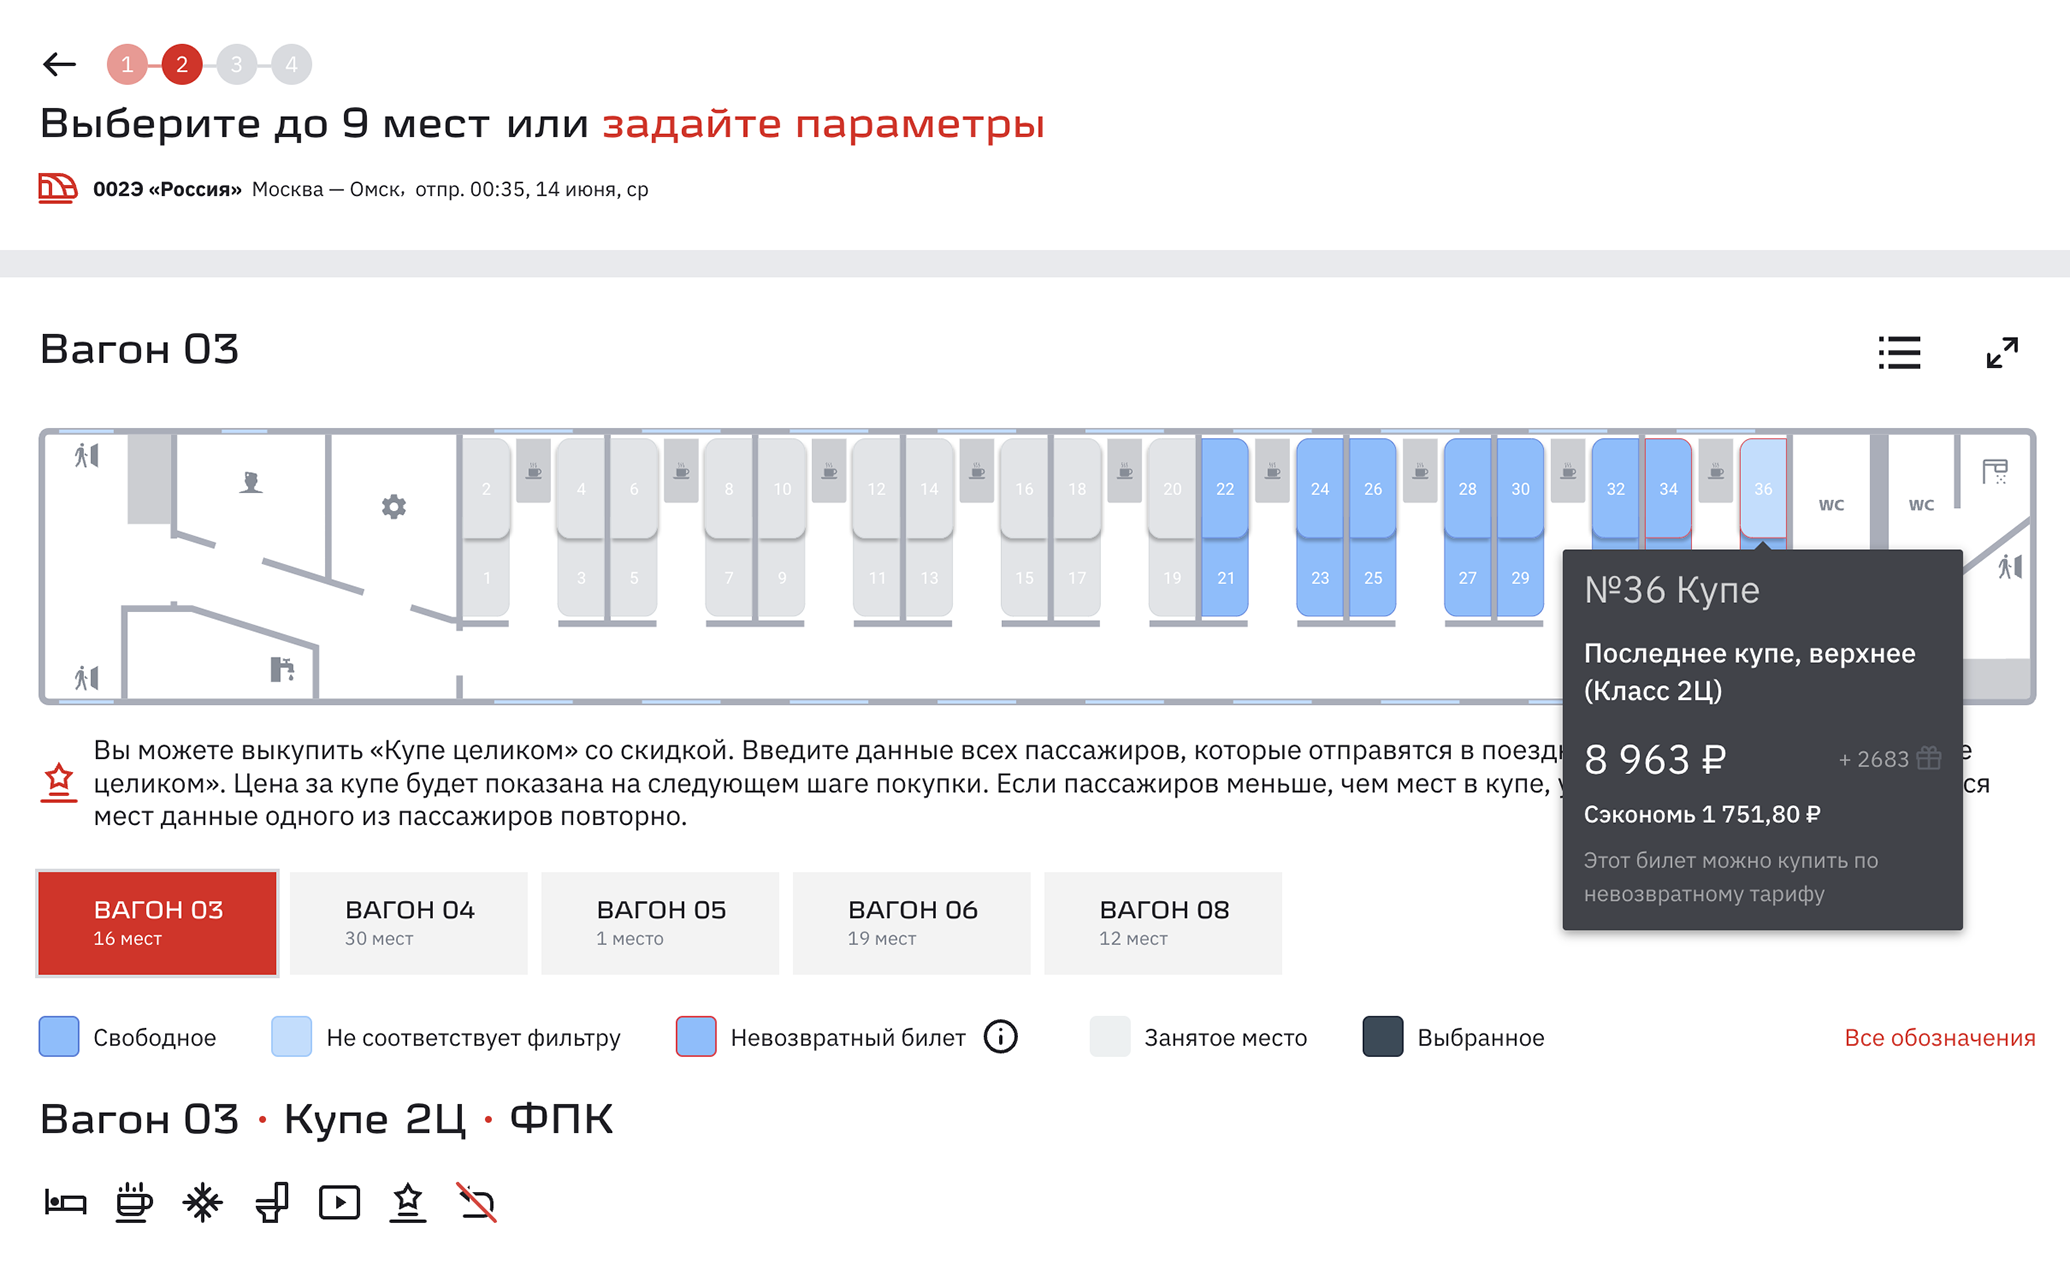 Обычный билет Москва — Омск на июнь стоит 8963 ₽